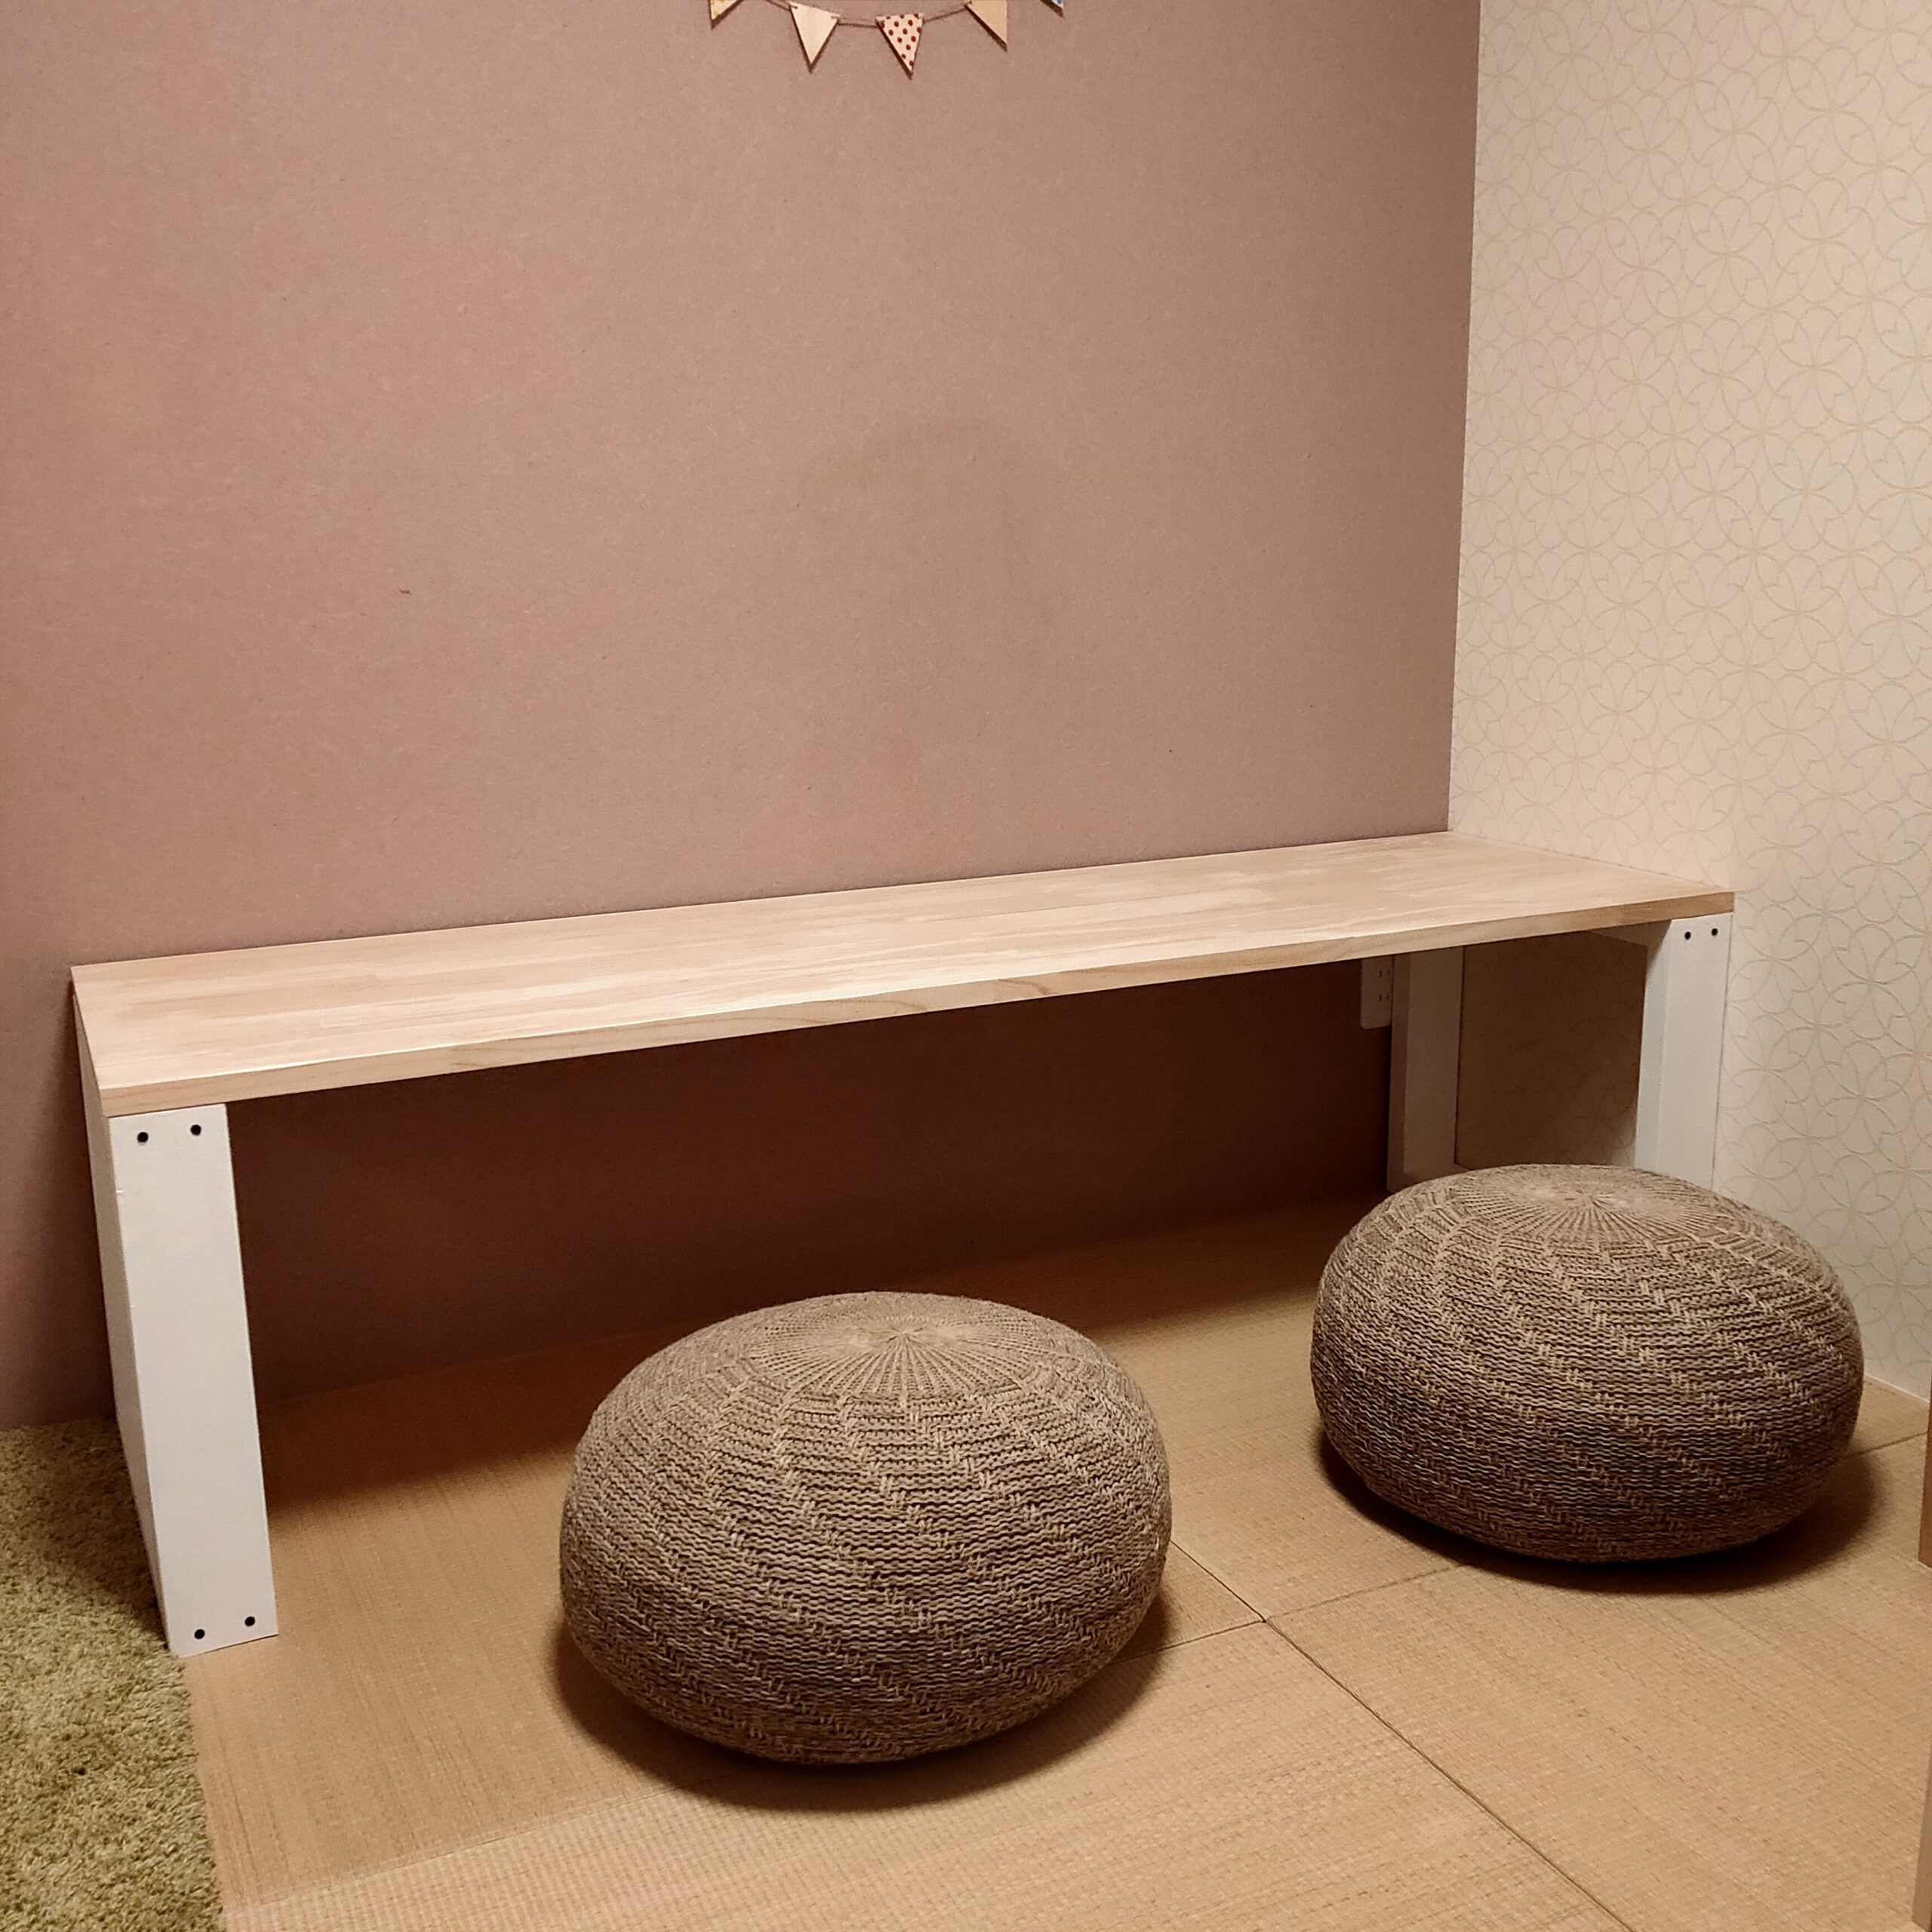 和室に合うおしゃれなクッション座椅子【1選】IKEAのサンダレードが